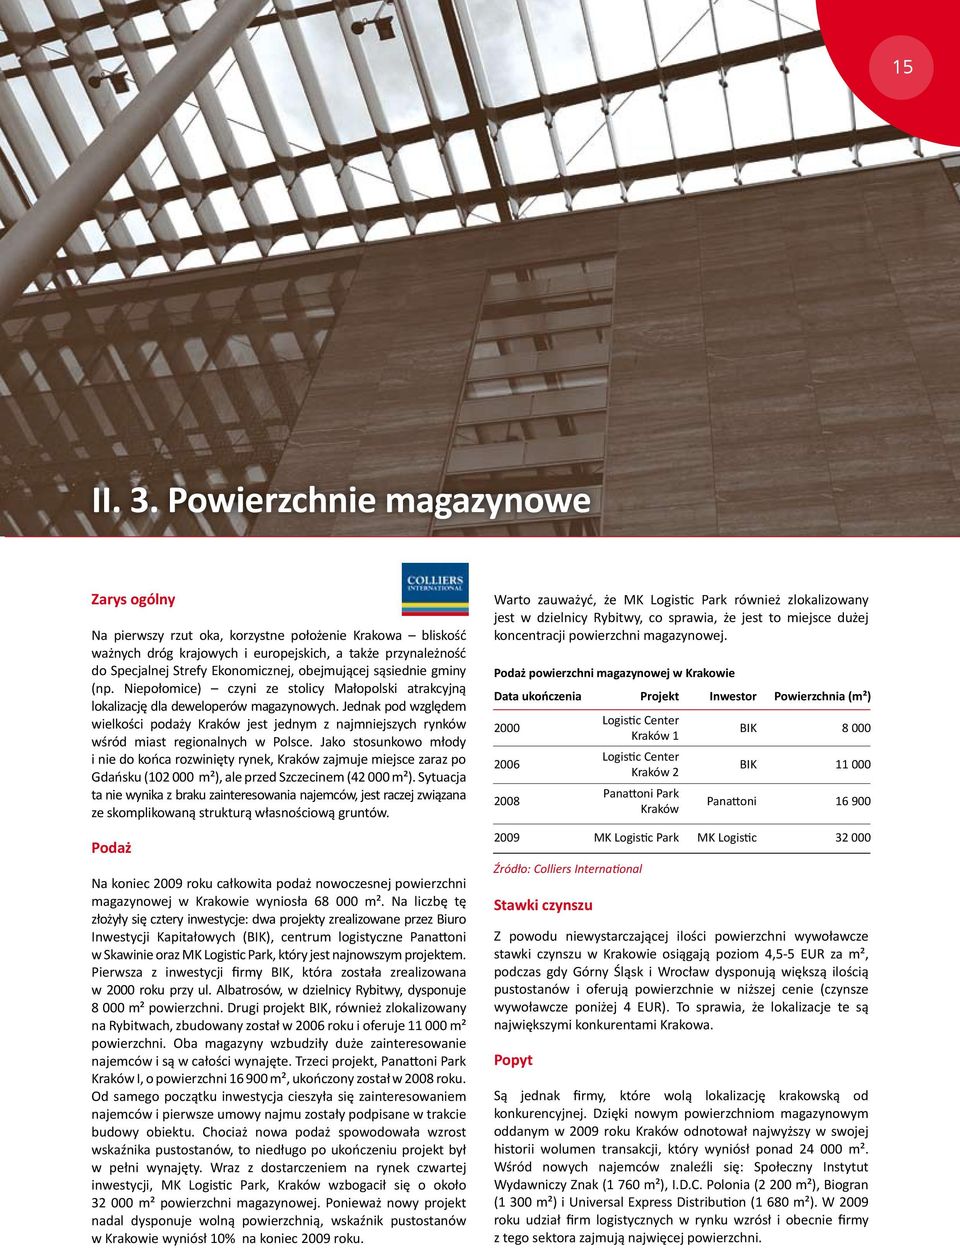 obejmującej sąsiednie gminy (np. Niepołomice) czyni ze stolicy Małopolski atrakcyjną lokalizację dla deweloperów magazynowych.